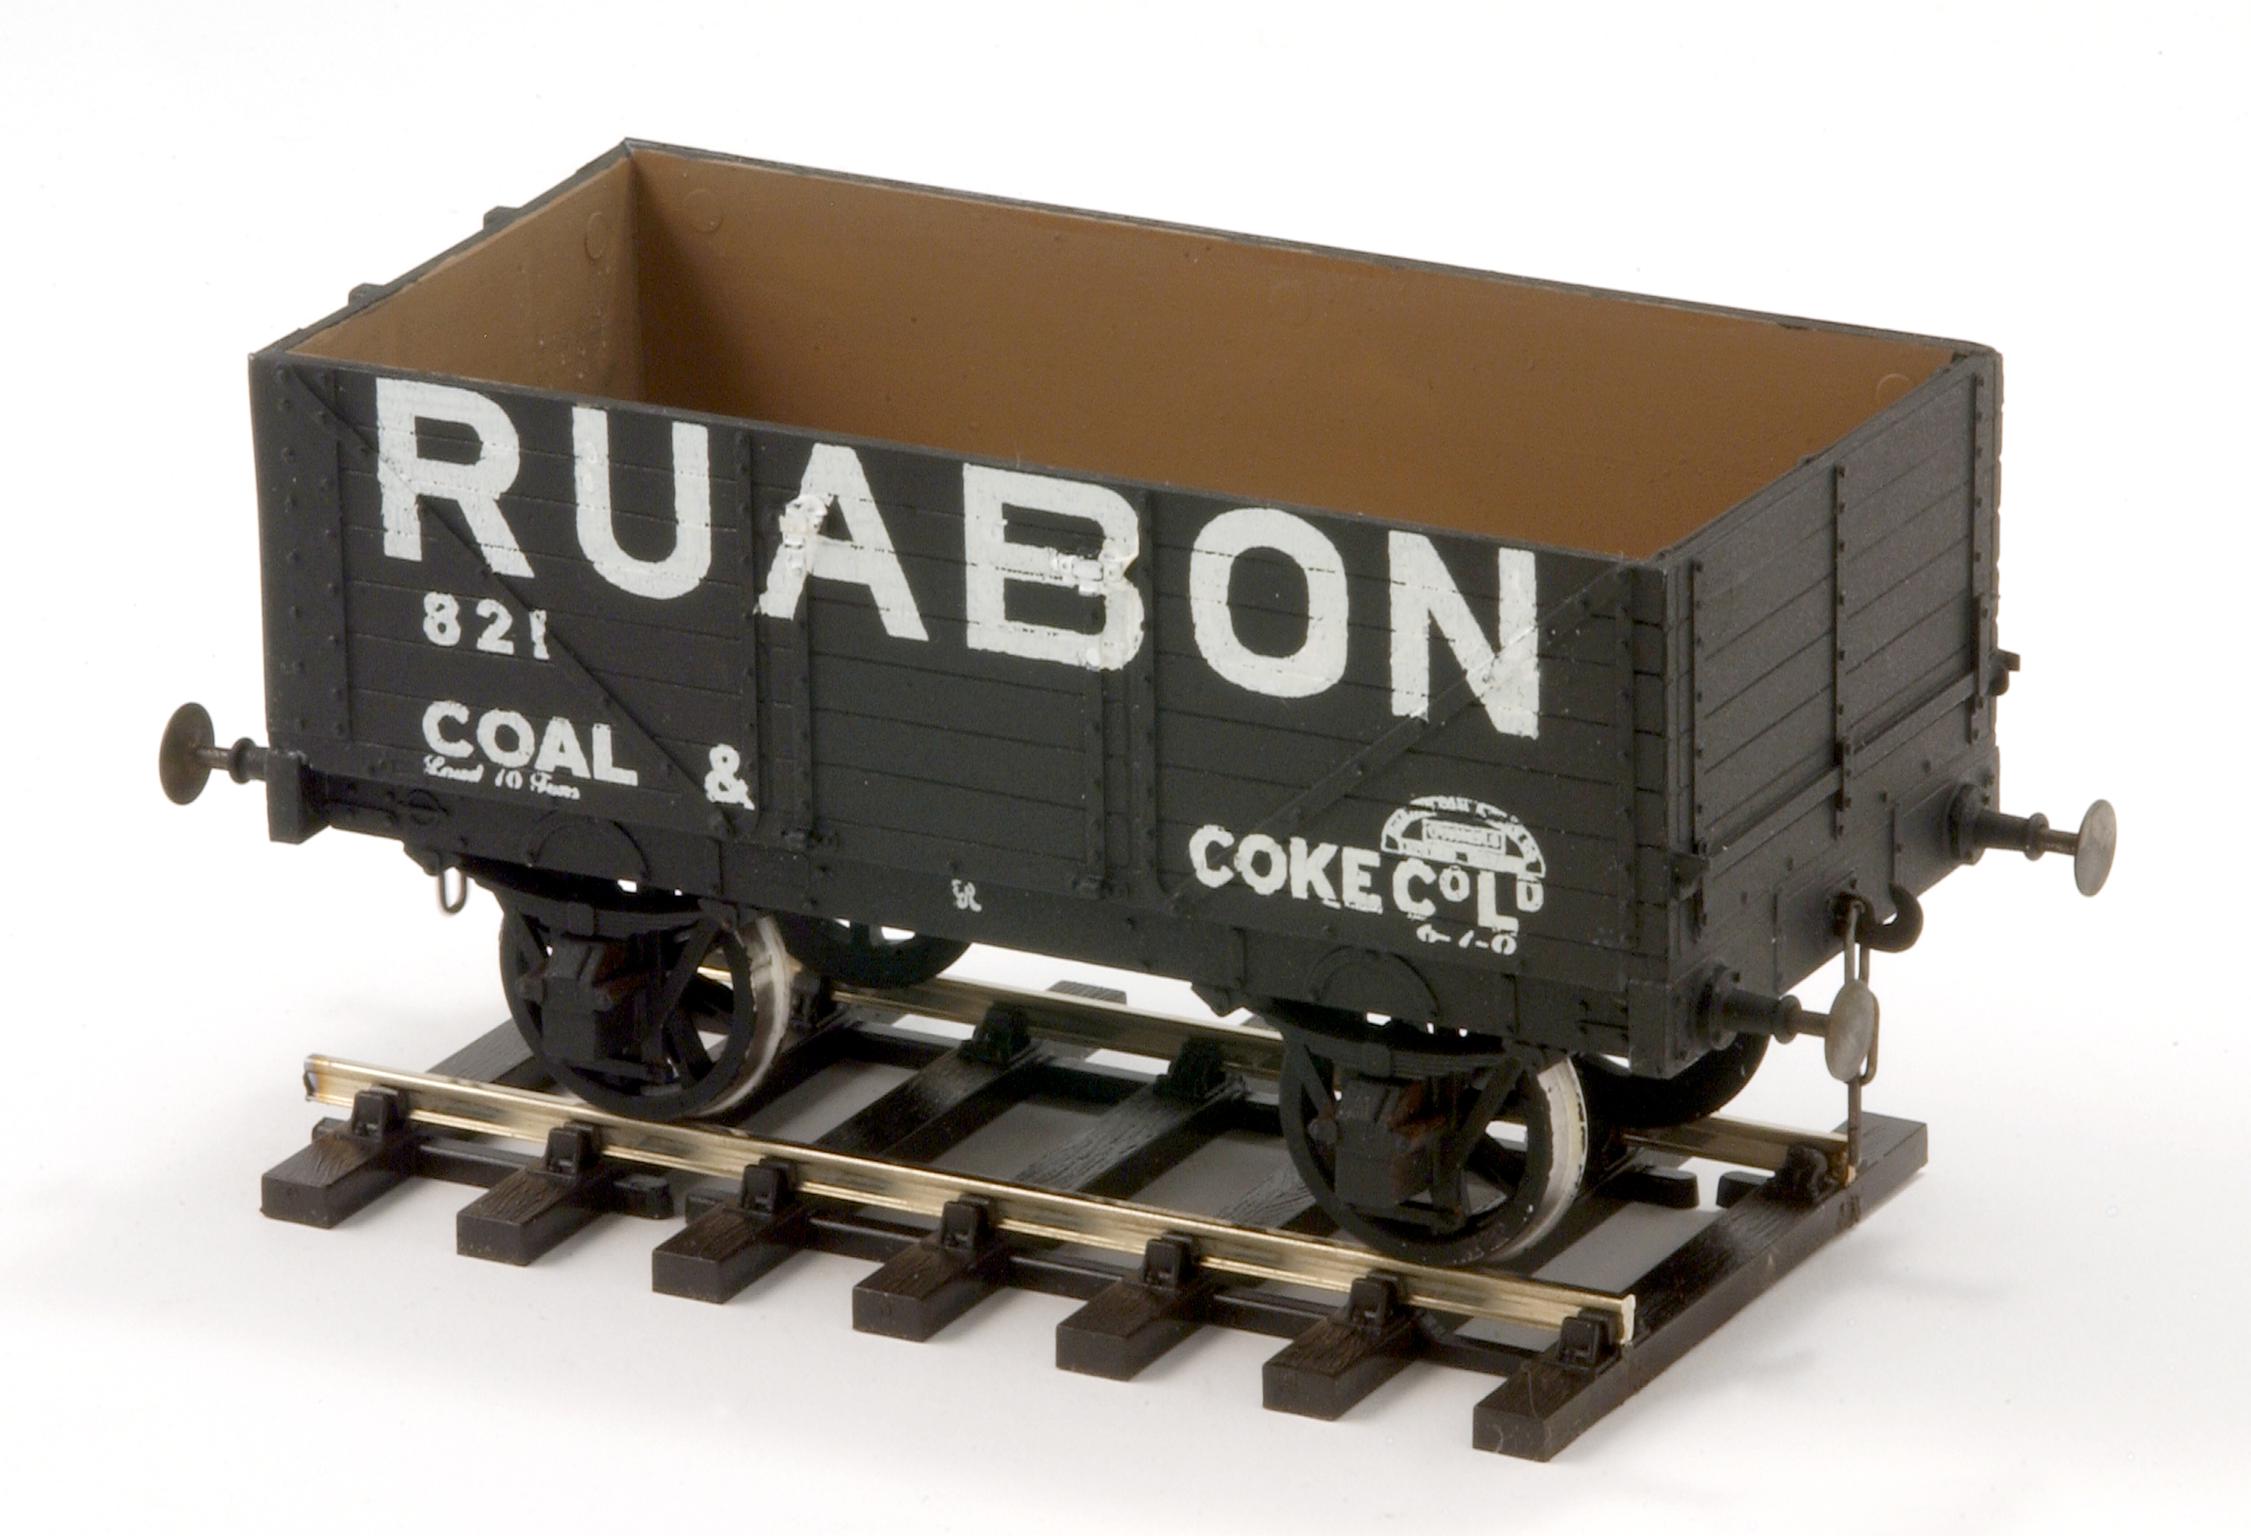 Ruabon Coal & Coke Co. Ltd., coal wagon model